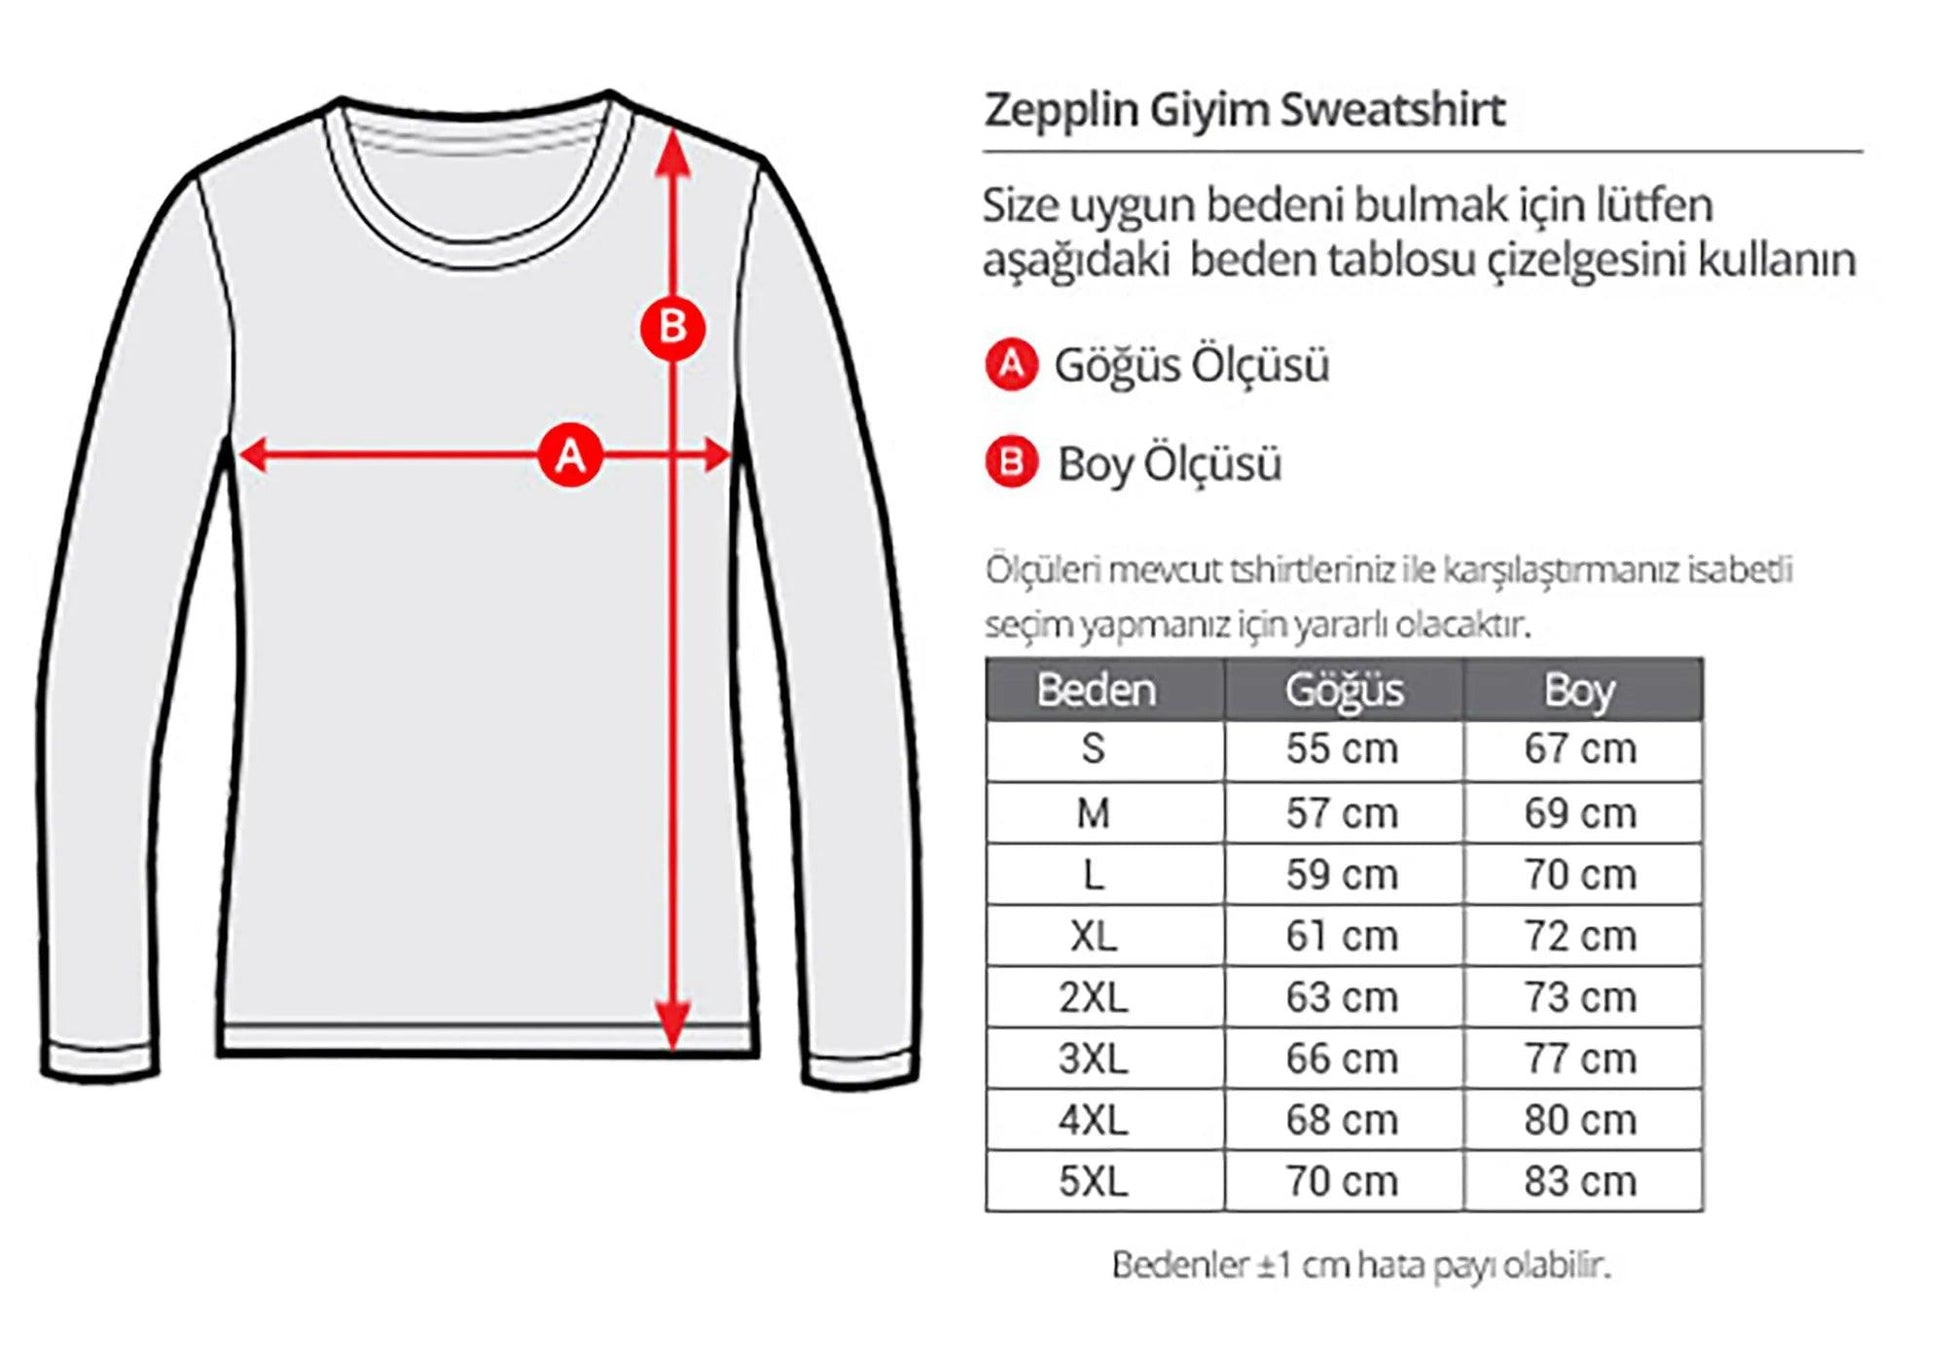 Galaksinin Koruyucuları Team Reglan Kol Beyaz Sweatshirt - Zepplingiyim